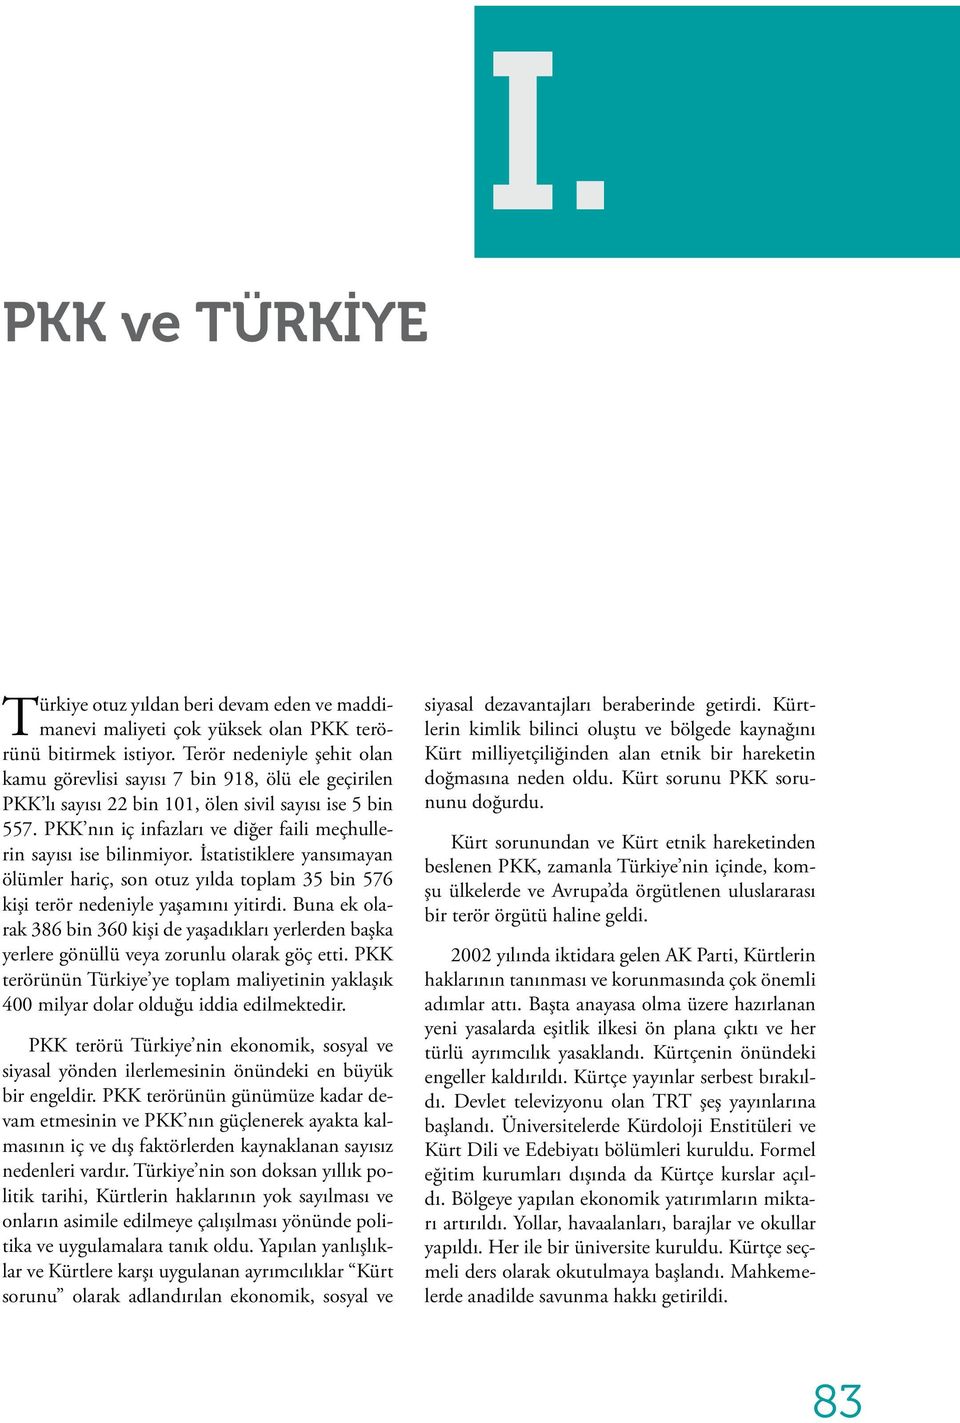 PKK nın iç infazları ve diğer faili meçhullerin sayısı ise bilinmiyor. İstatistiklere yansımayan ölümler hariç, son otuz yılda toplam 35 bin 576 kişi terör nedeniyle yaşamını yitirdi.